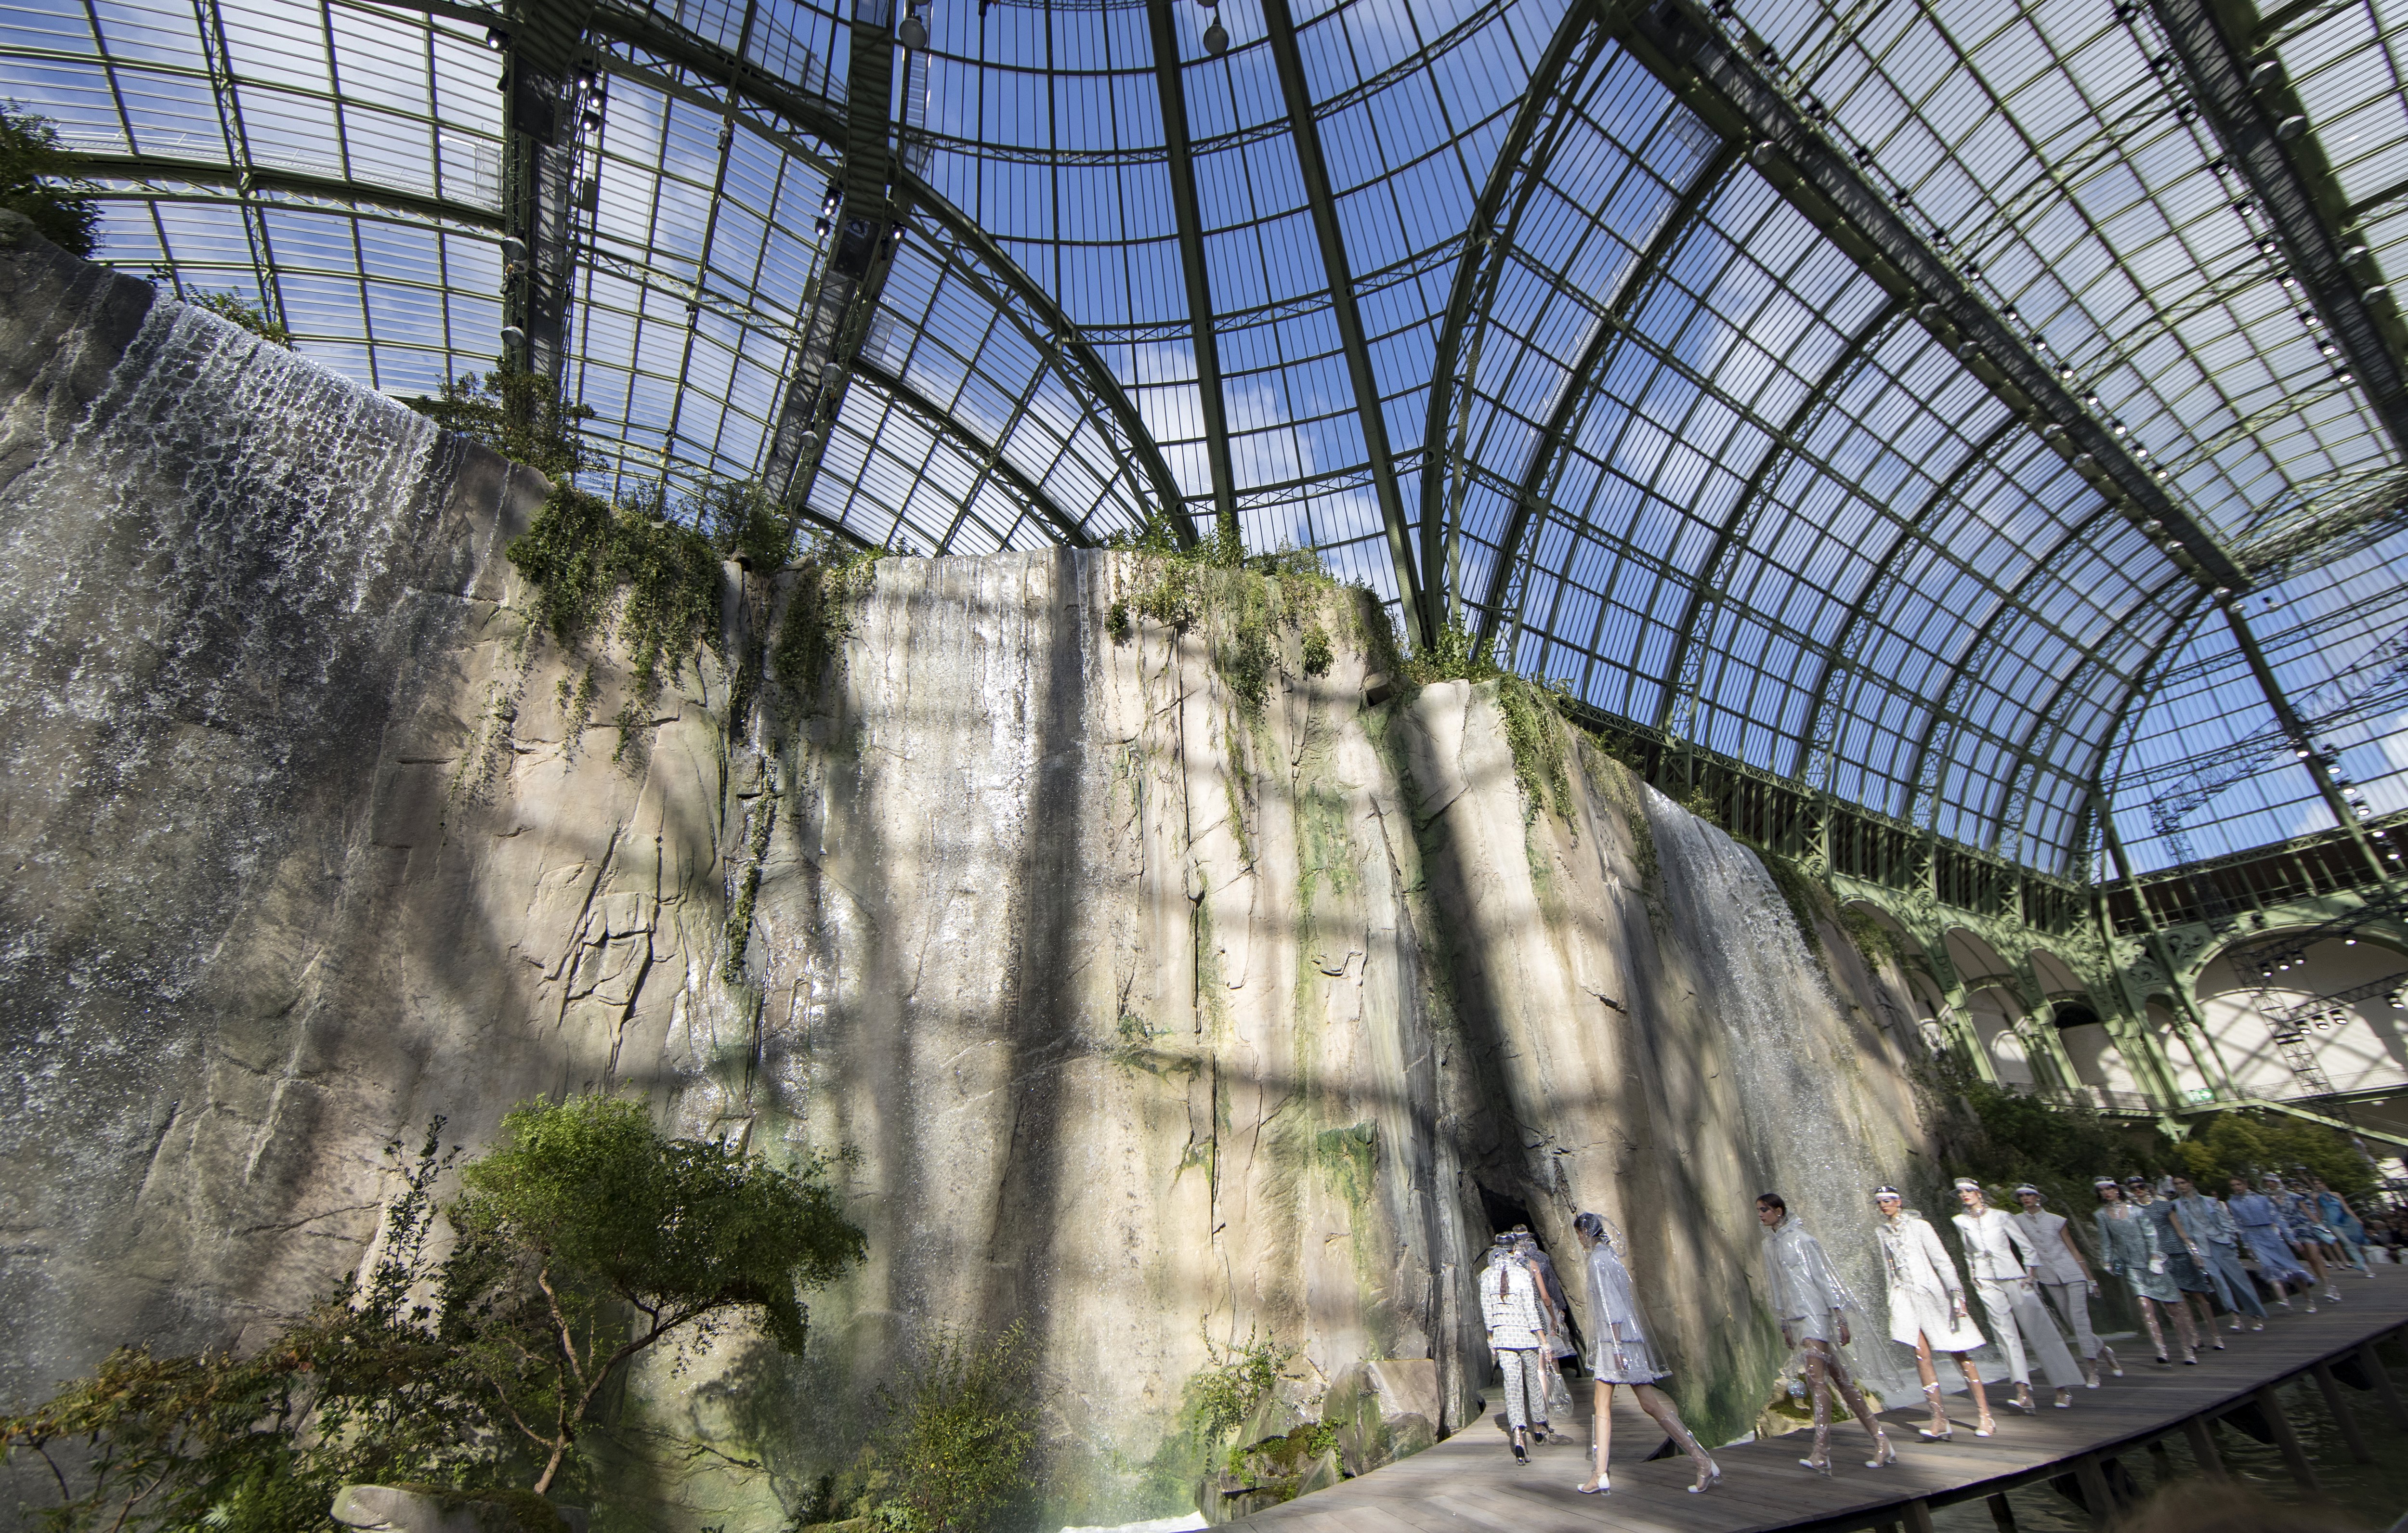 Карл Лагерфелд украси изложбената зала Гран пале с водопад за ревюто си през последния ден на Парижката седмица на модата. Манекенките преминаха по подиума добре защитени - с прозрачни найлонови ботуши над коленете, наметала и ръкавици.